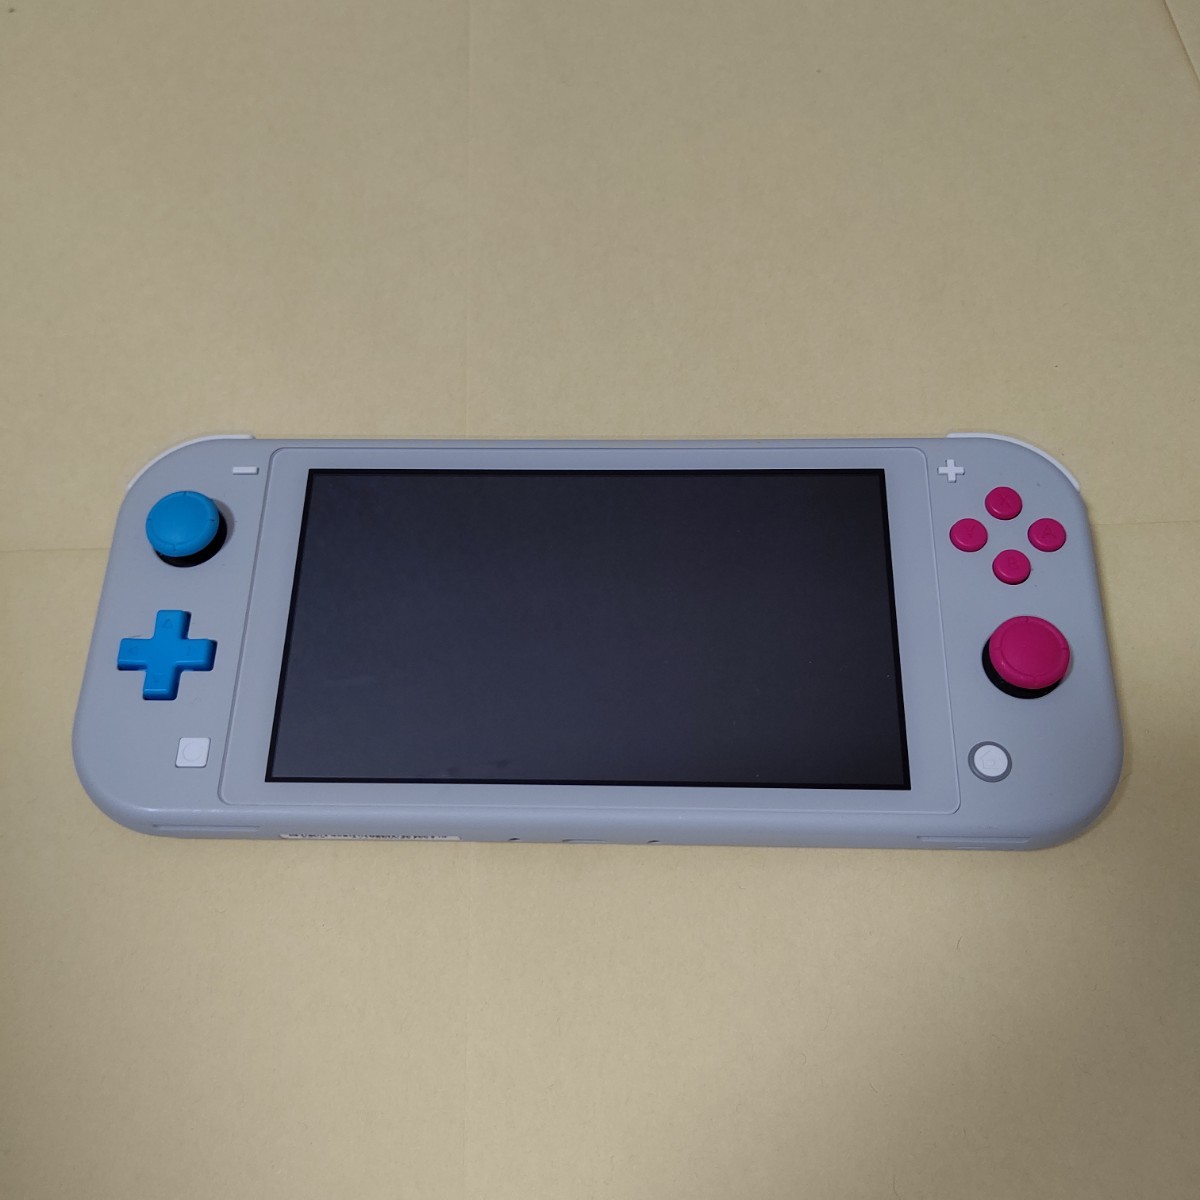 7244円 レビューを書けば送料当店負担 Nintendo Switch Lite ザシアン ザマゼンタ本体のみ付属品無し